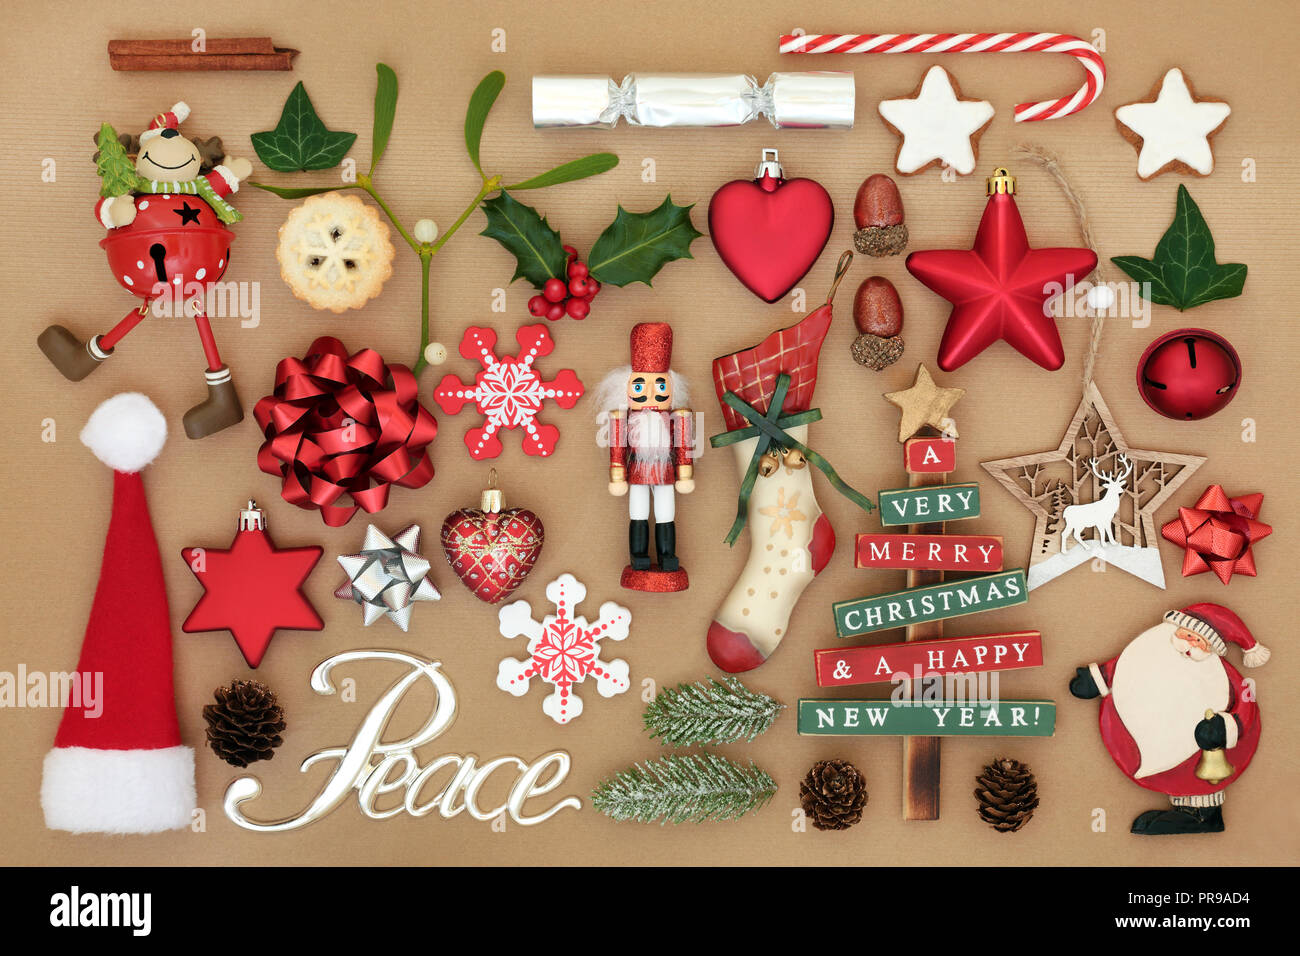 Albero di Natale decorazioni e ornamenti con argento segno di pace, il cibo, la flora e i tradizionali simboli costituenti un abstract background. Foto Stock